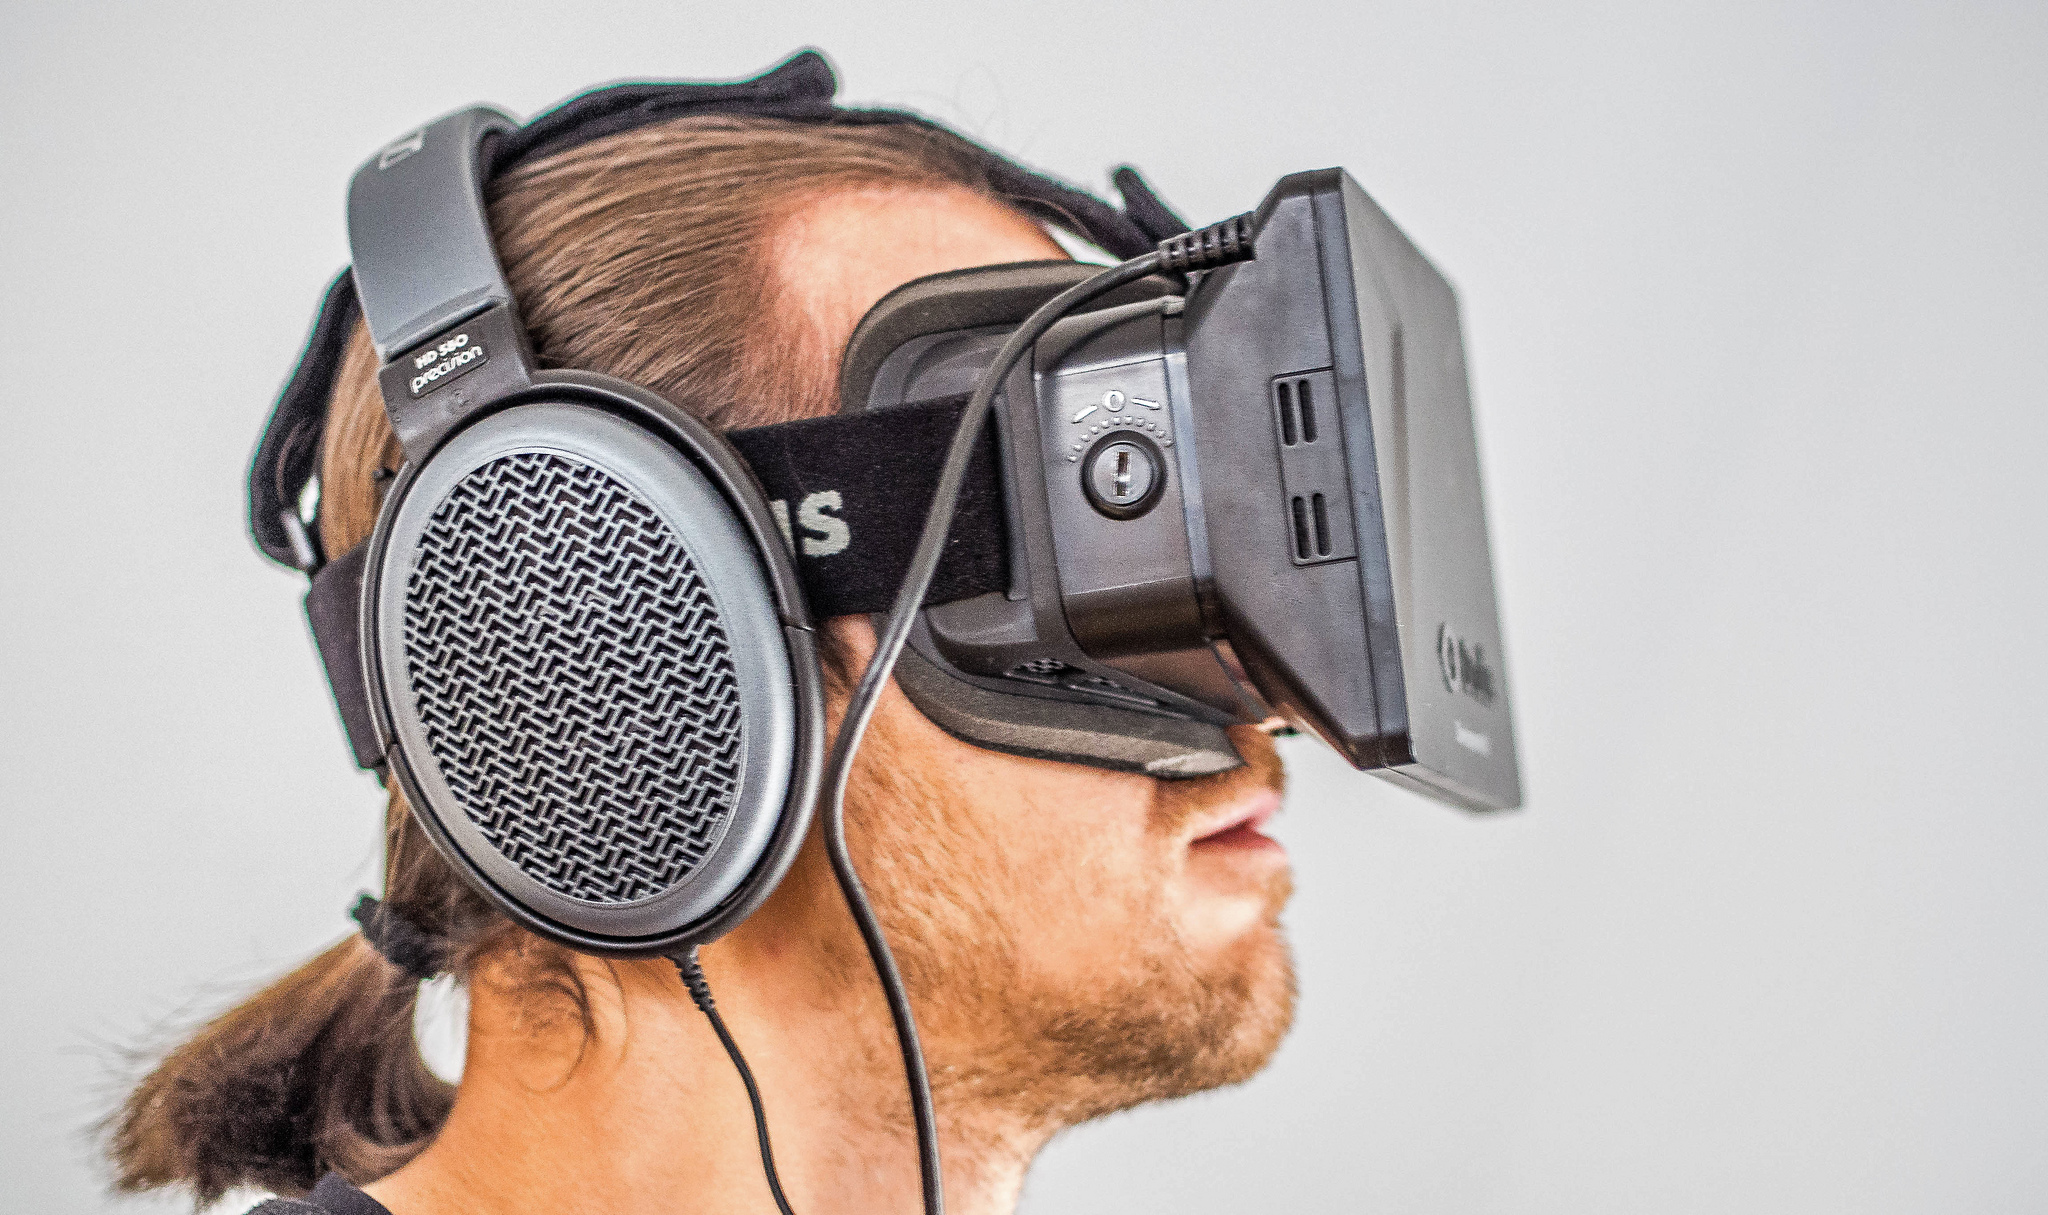 Un repaso a la realidad virtual: Playstation VR y Oculus Rift